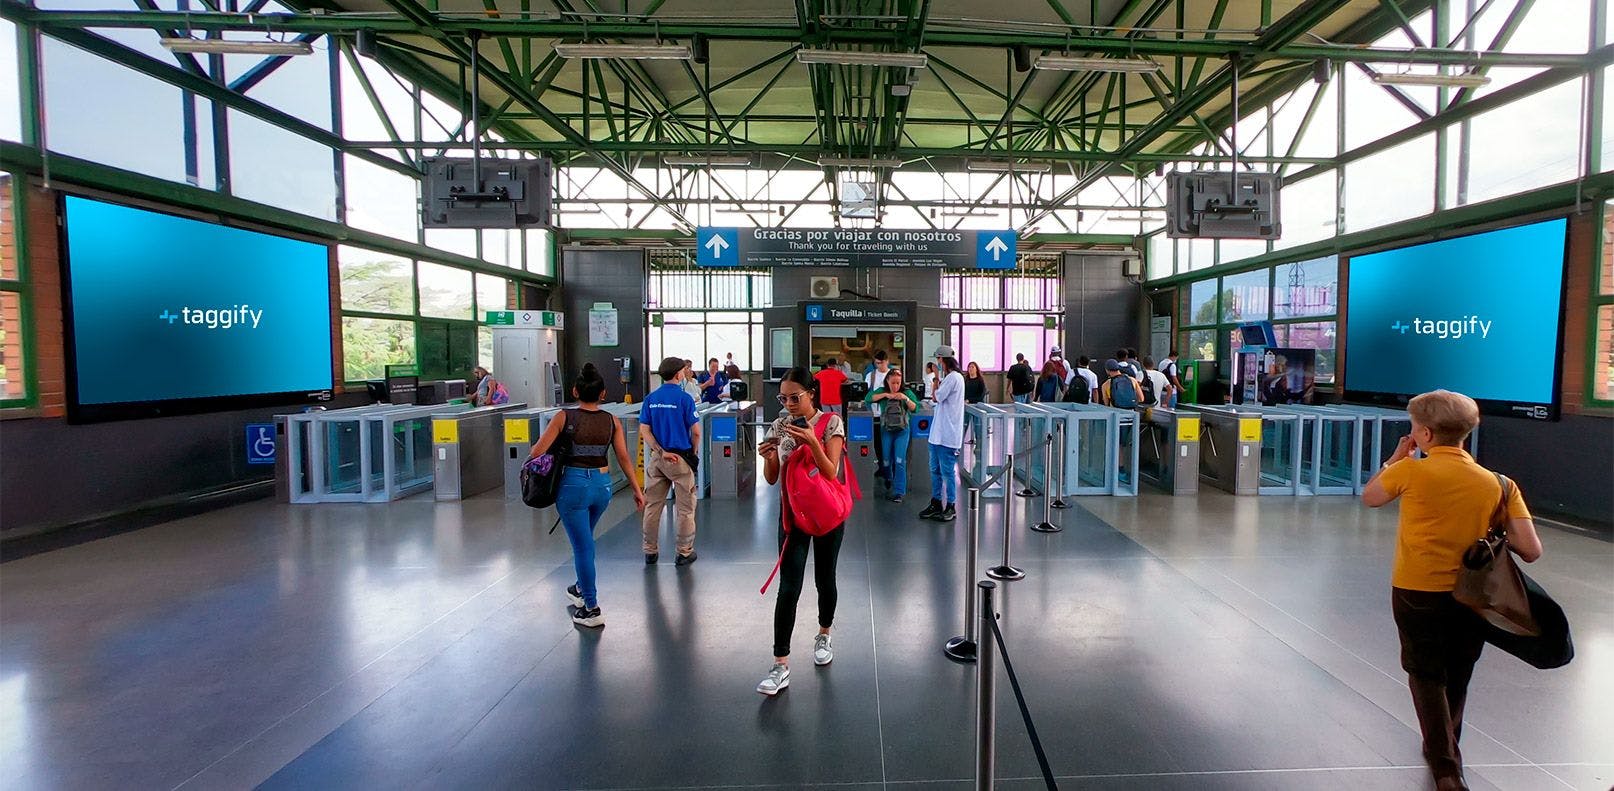 Medellin - Estacion Envigado - Metro Medellin, Medellín